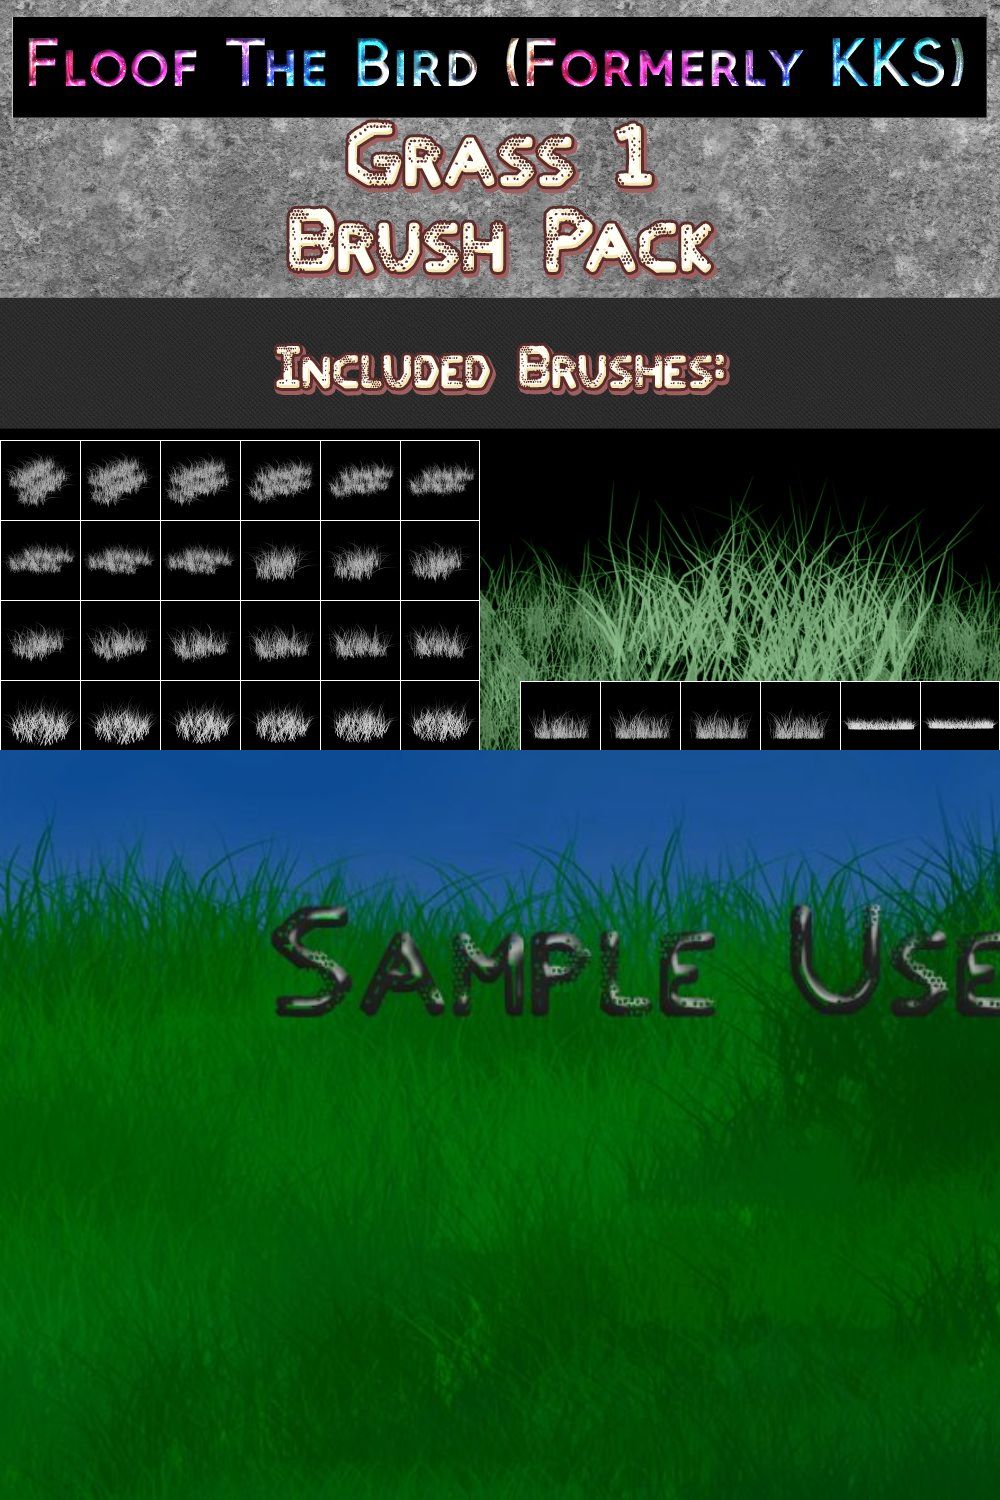 Grass 1 brush set by FloofTheBird pinterest preview image.